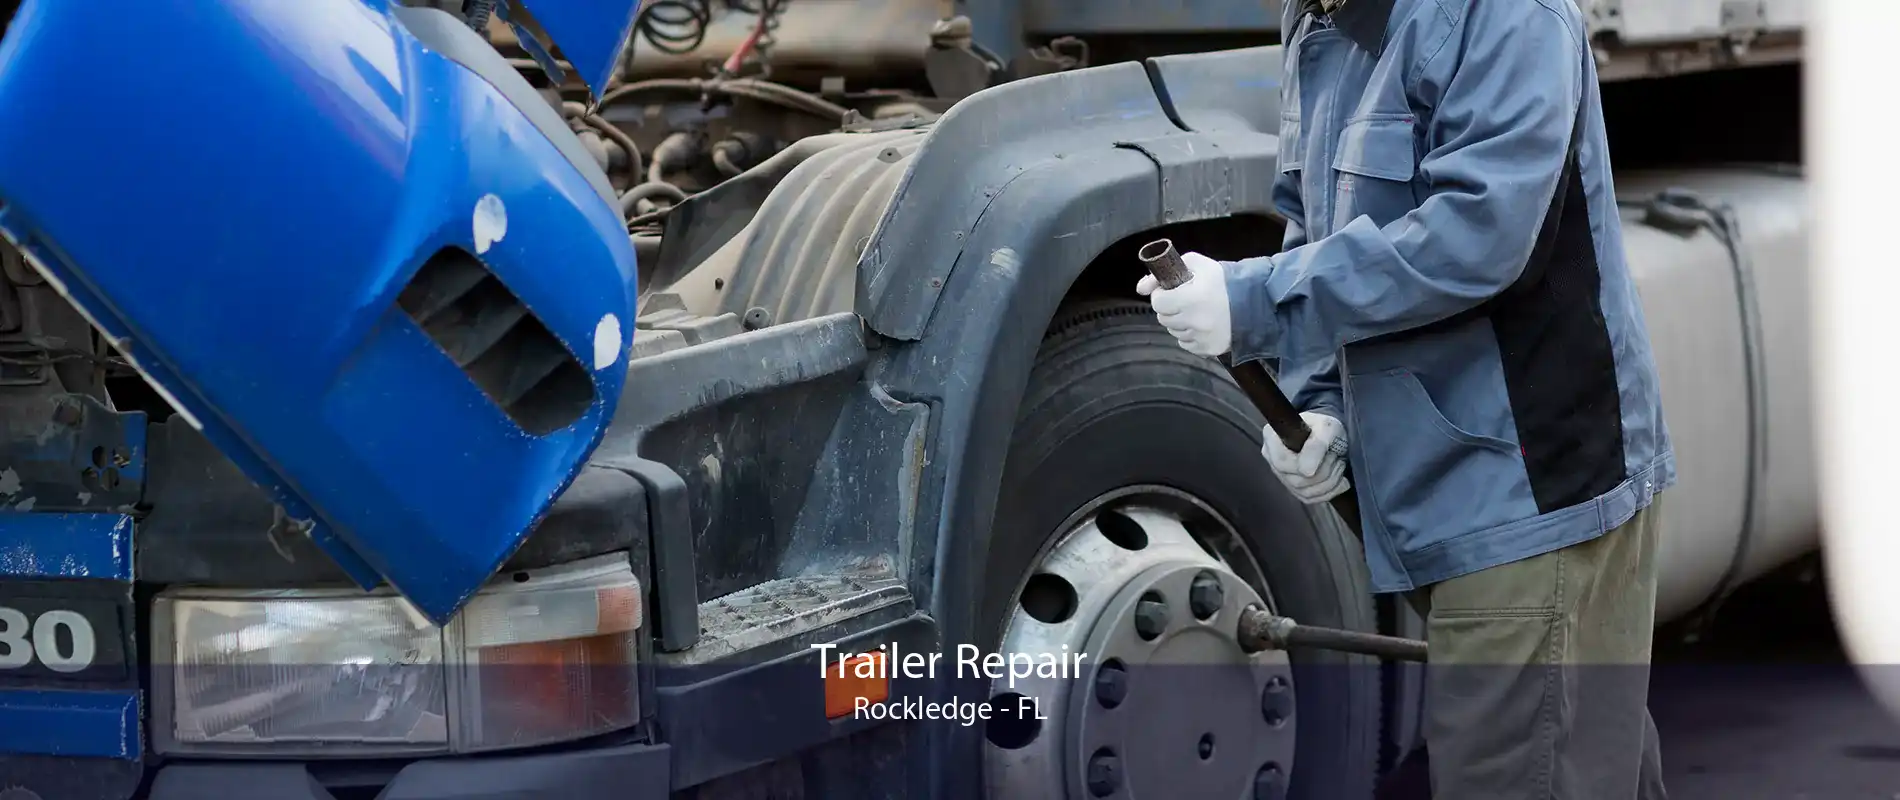 Trailer Repair Rockledge - FL